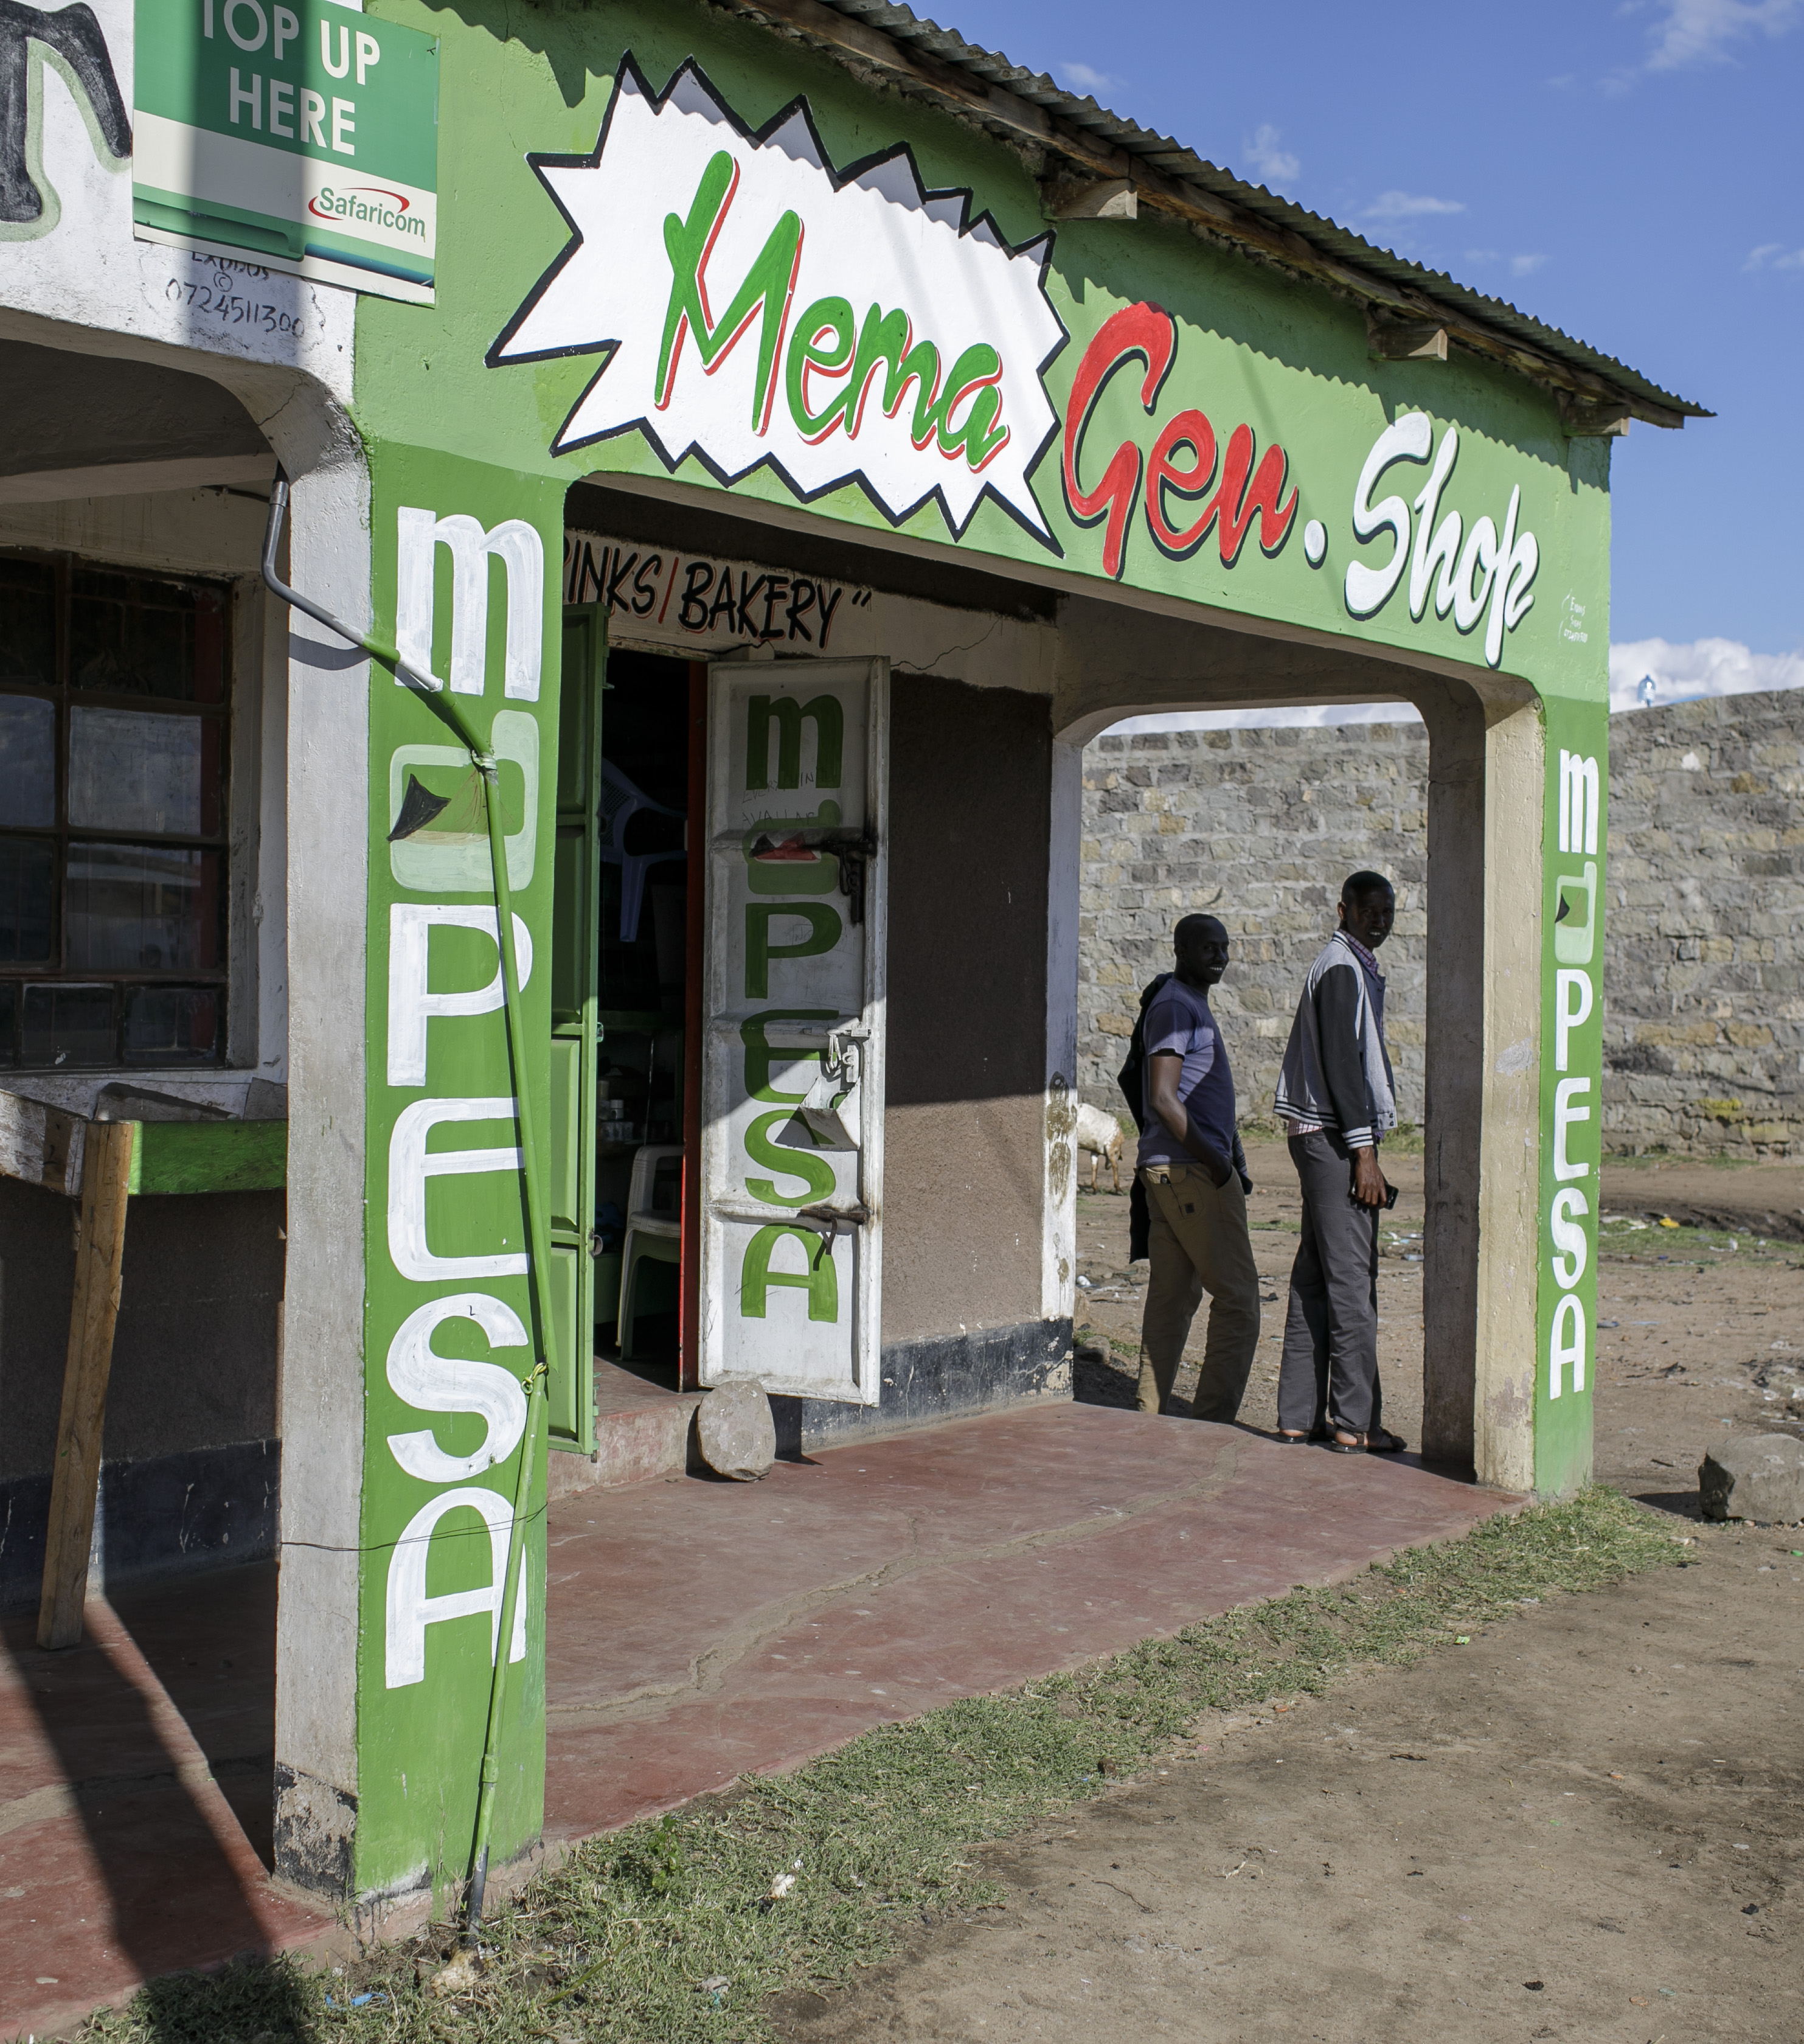 Fi­lia­le von M-Pe­sa, ei­nem Sys­tem zum bar­geld­lo­sen Zah­lungs­ver­kehr mit dem Mo­bil­te­le­fon in Ke­nia